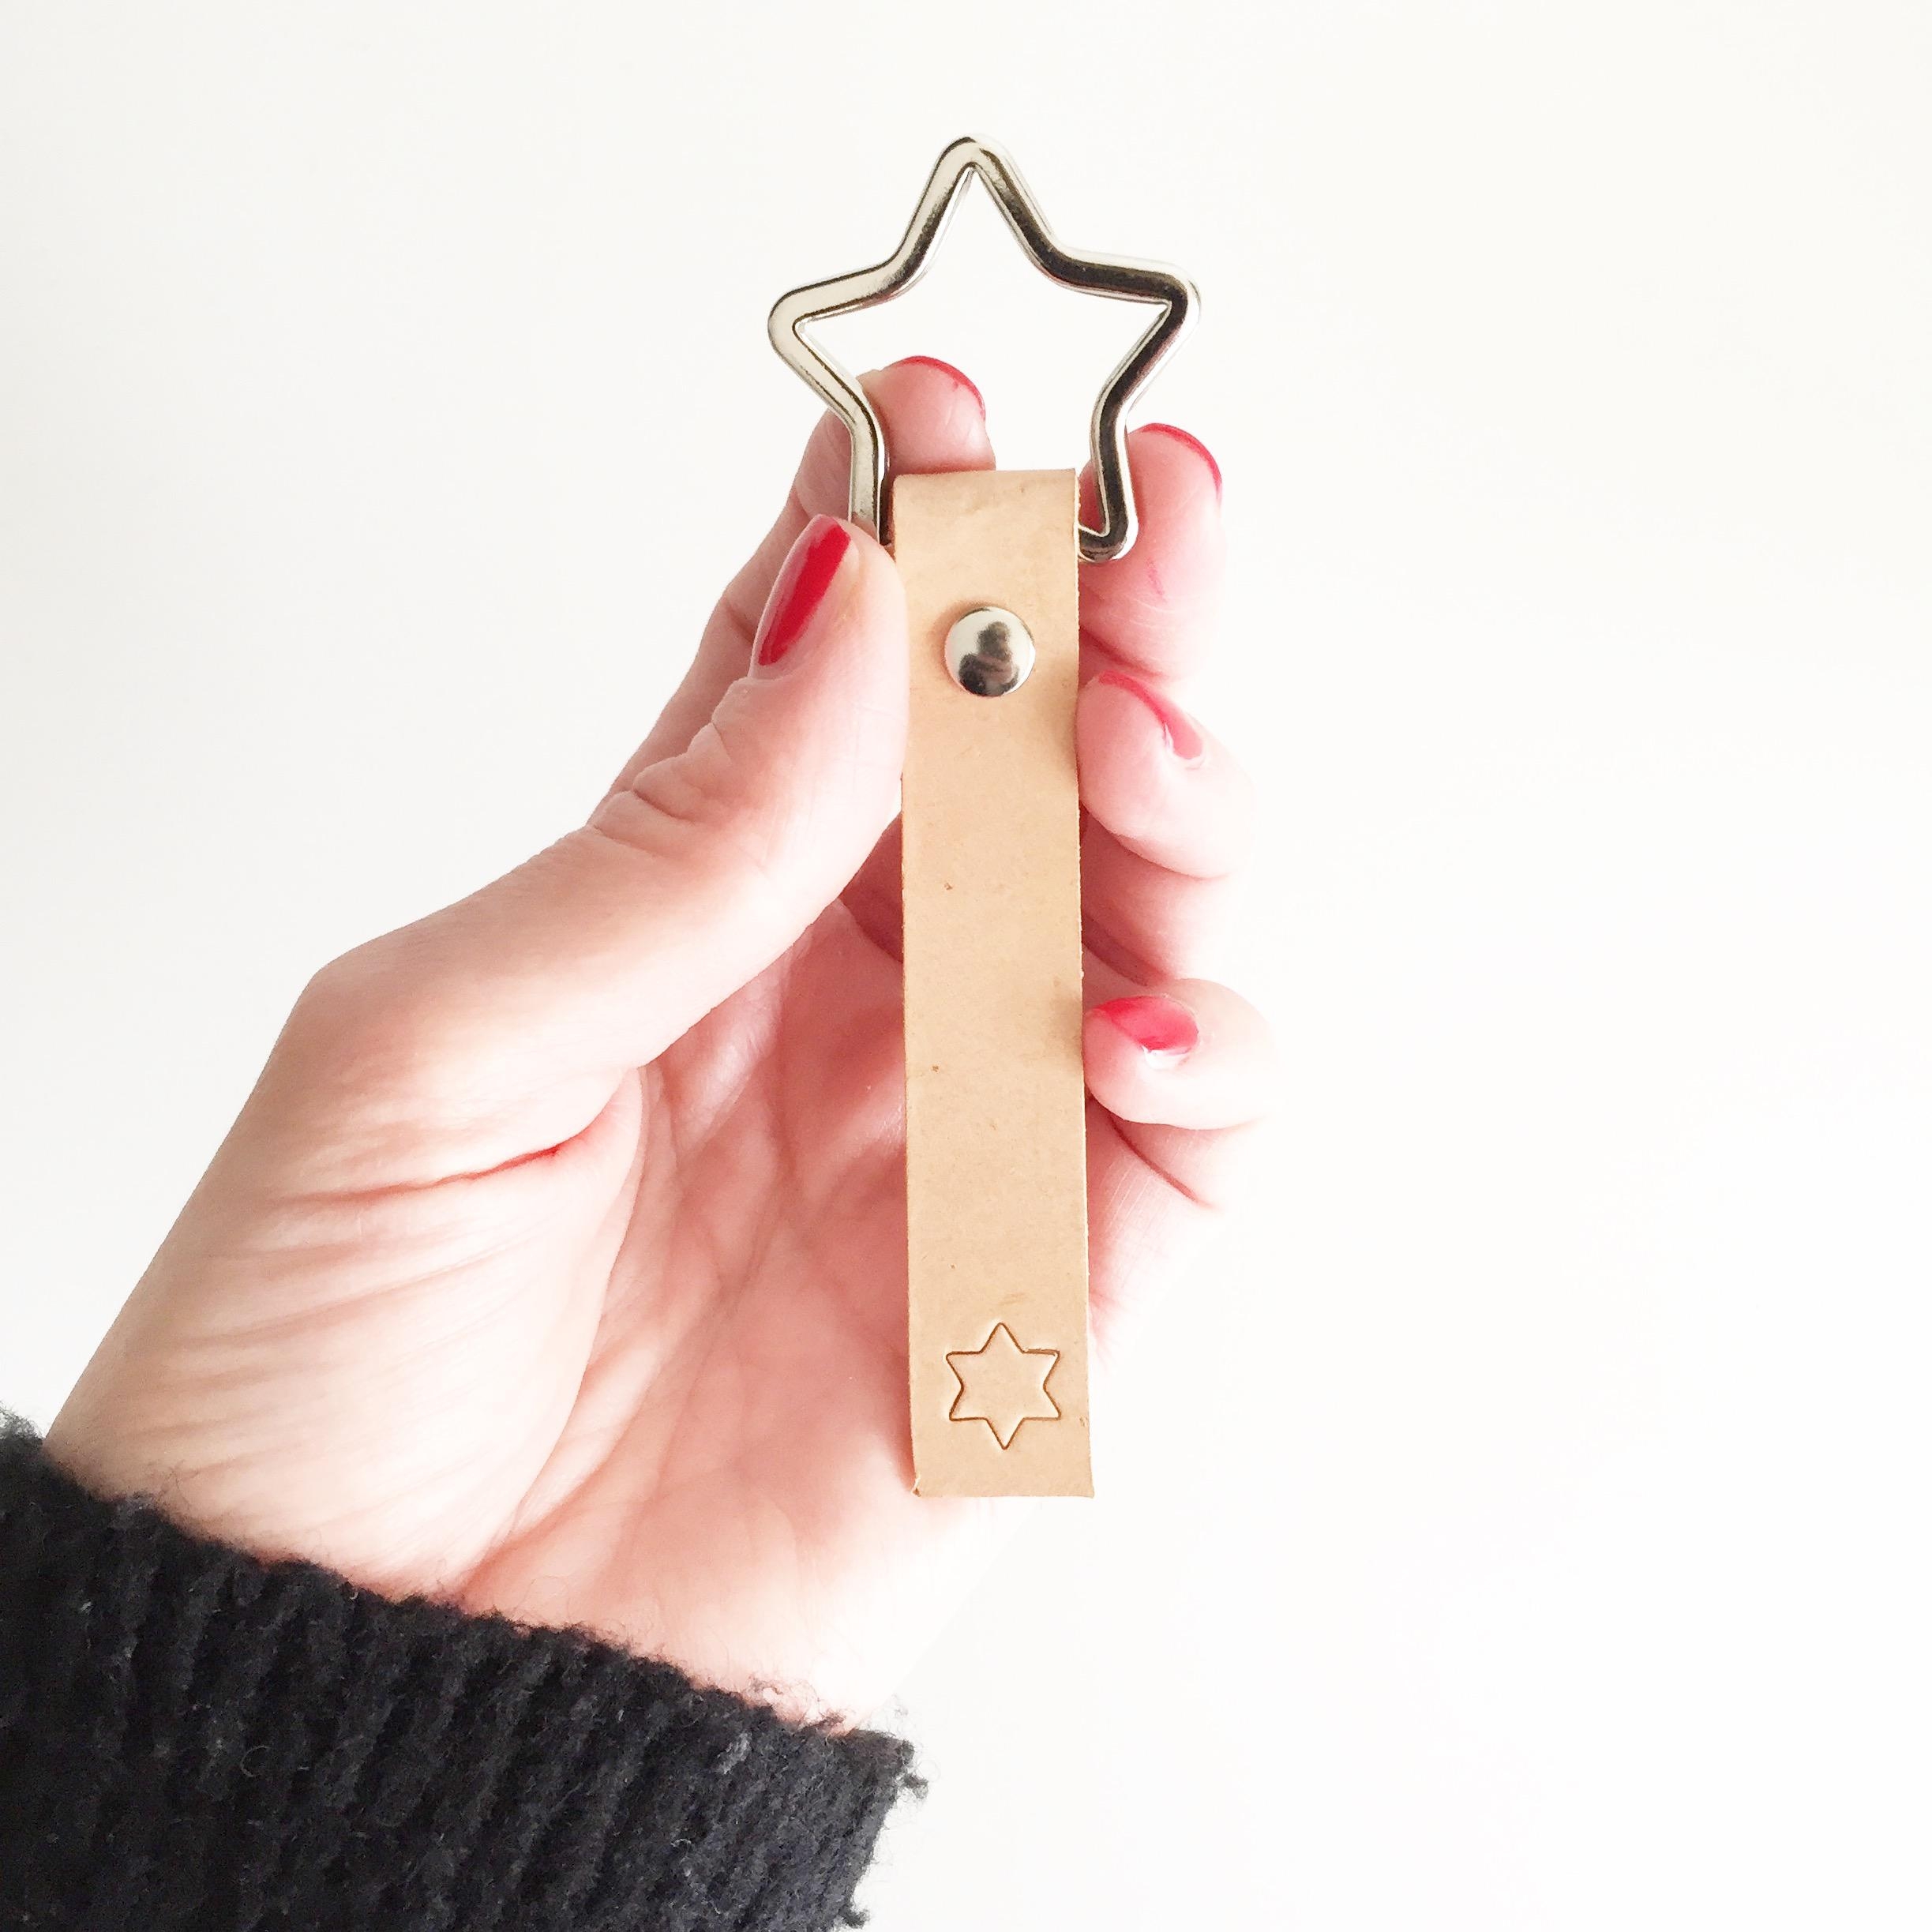 DIY Schlüsselanhänger ♡
#diygeschenkidee #diyweek